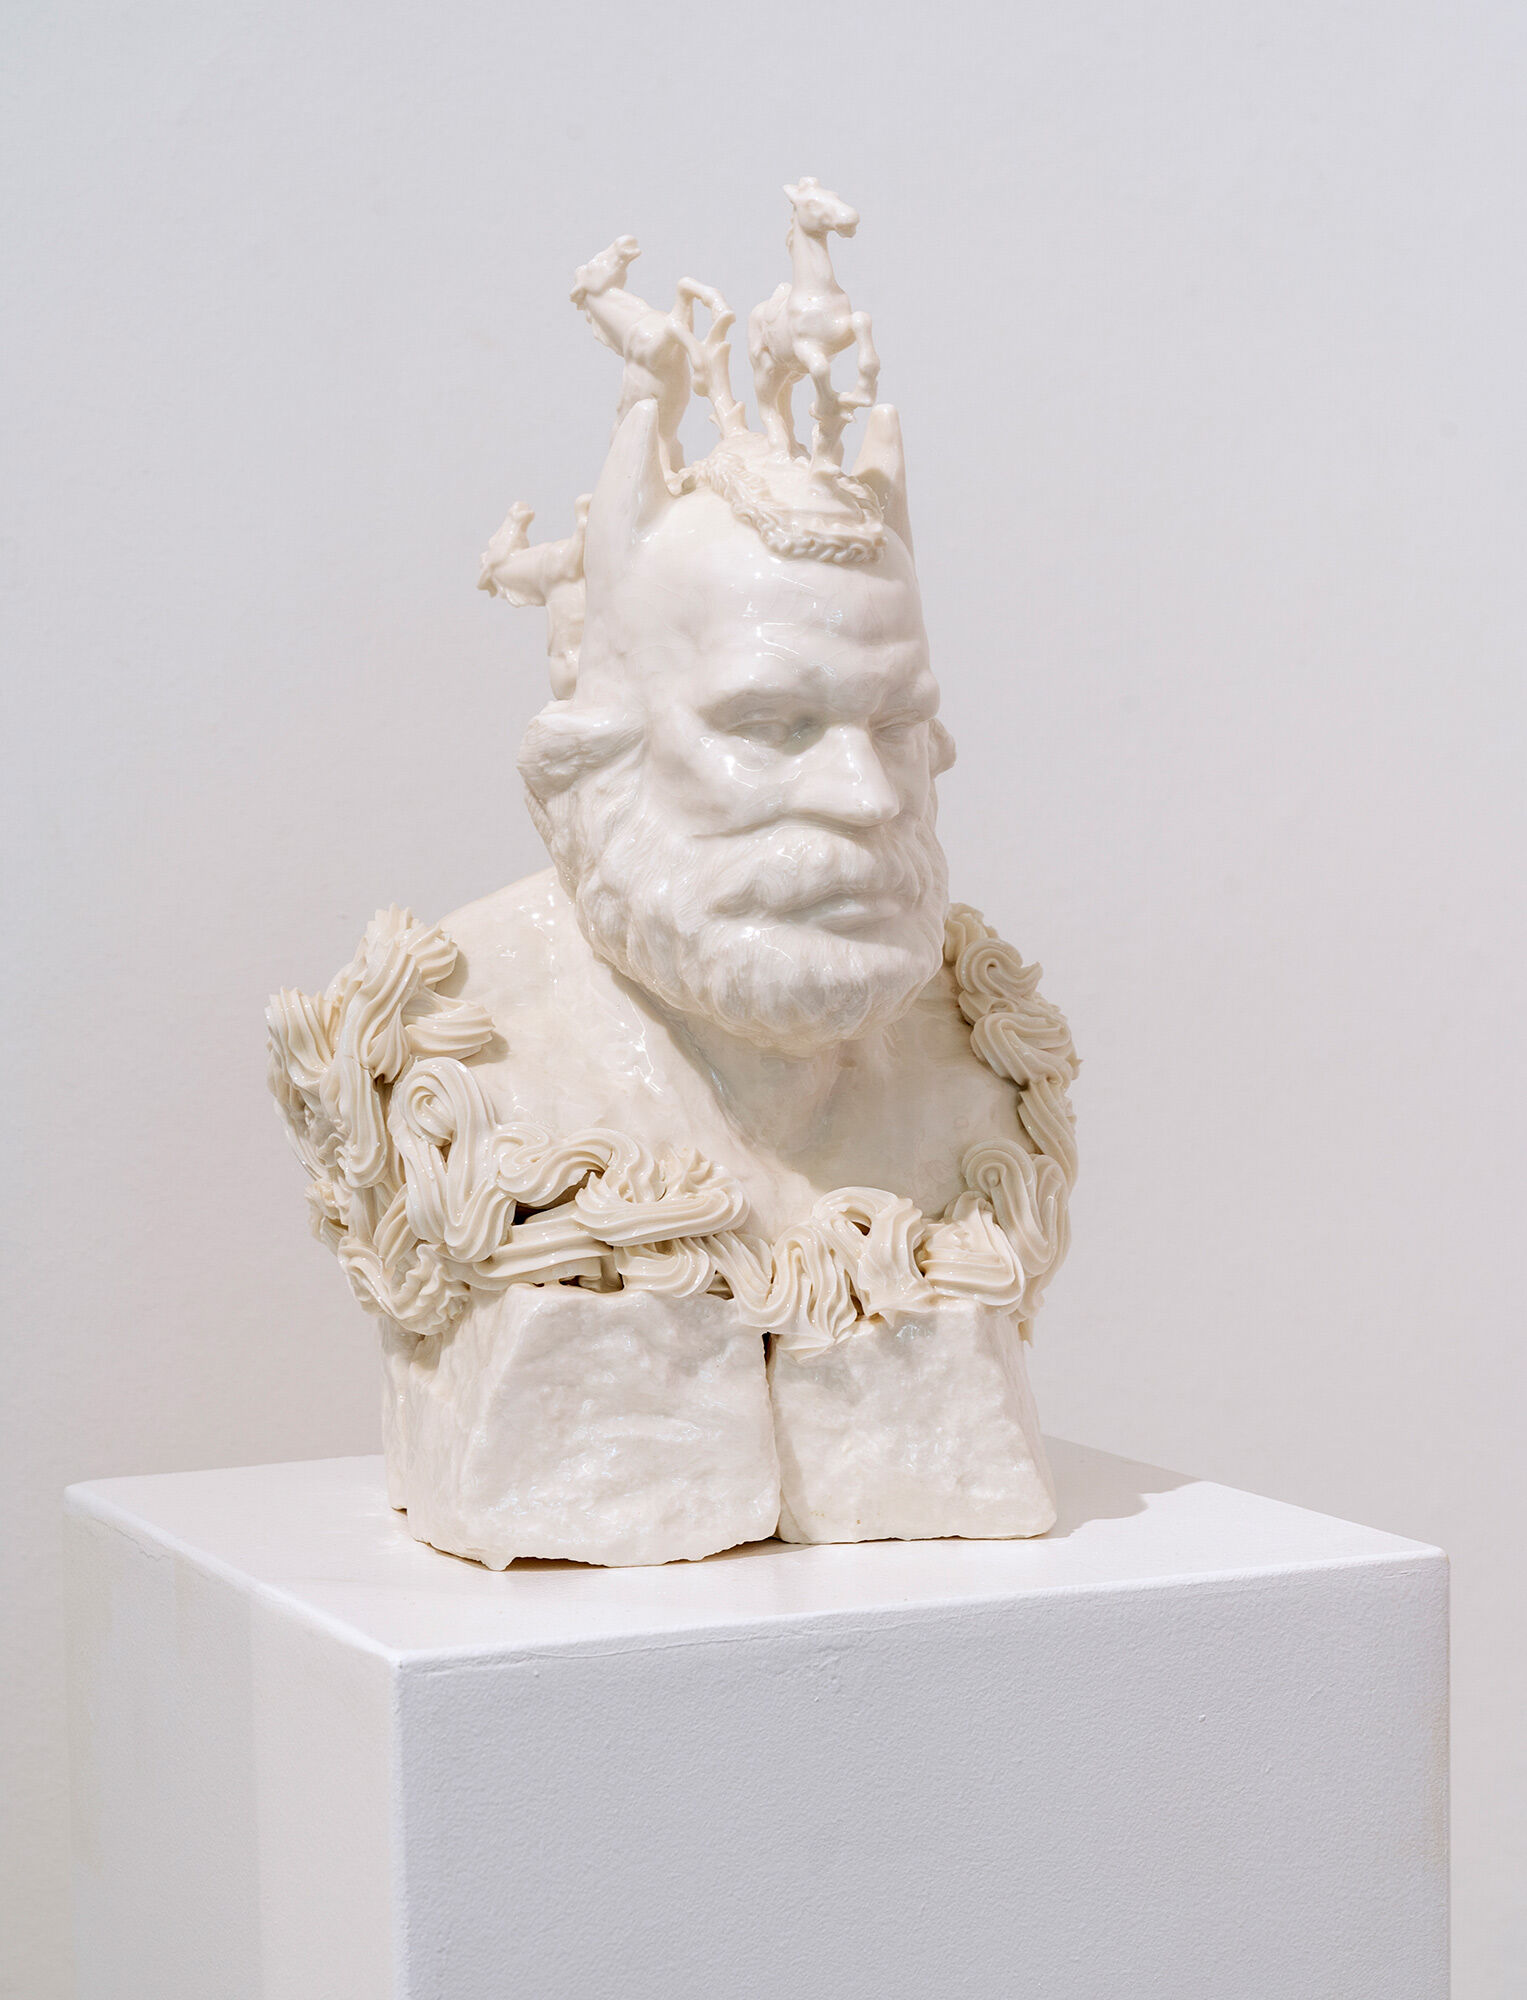 Sculpture "B. Marx No. 3" (2015), porcelain by Hannes Uhlenhaut